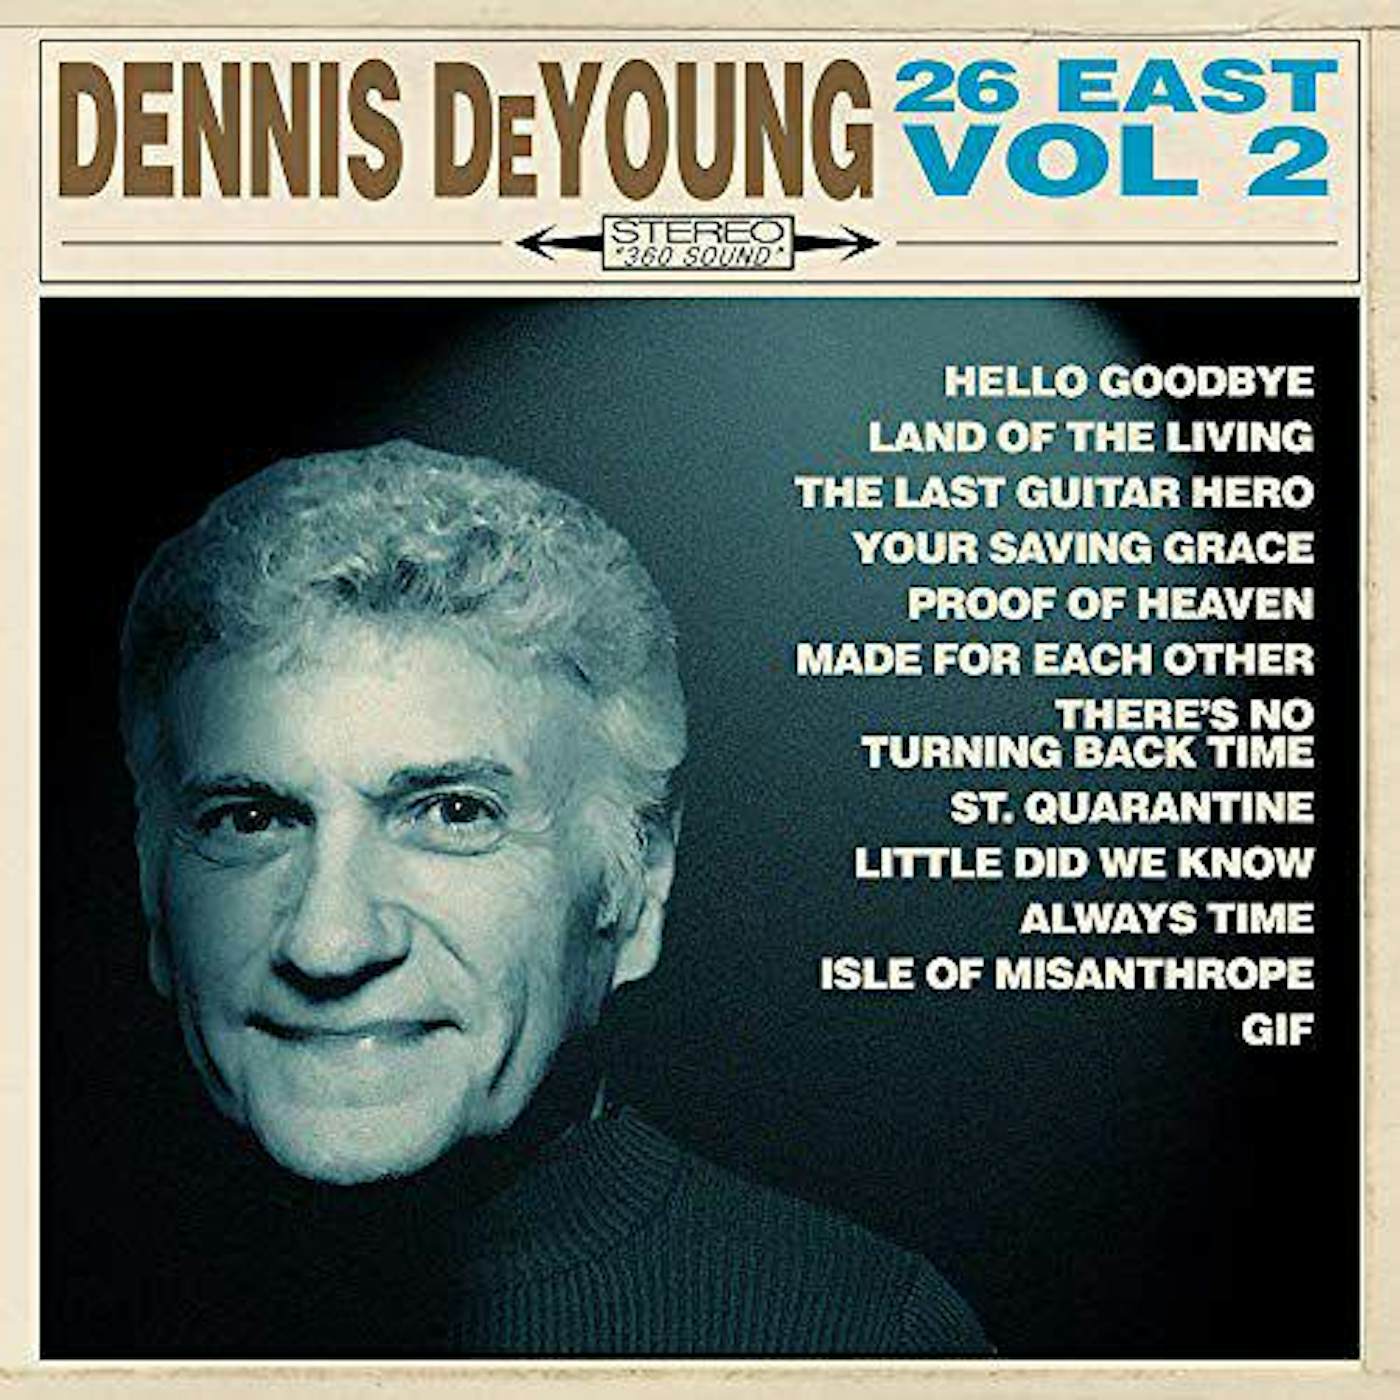 Dennis De Young 26 EAST, VOL. 2 Vinyl Record